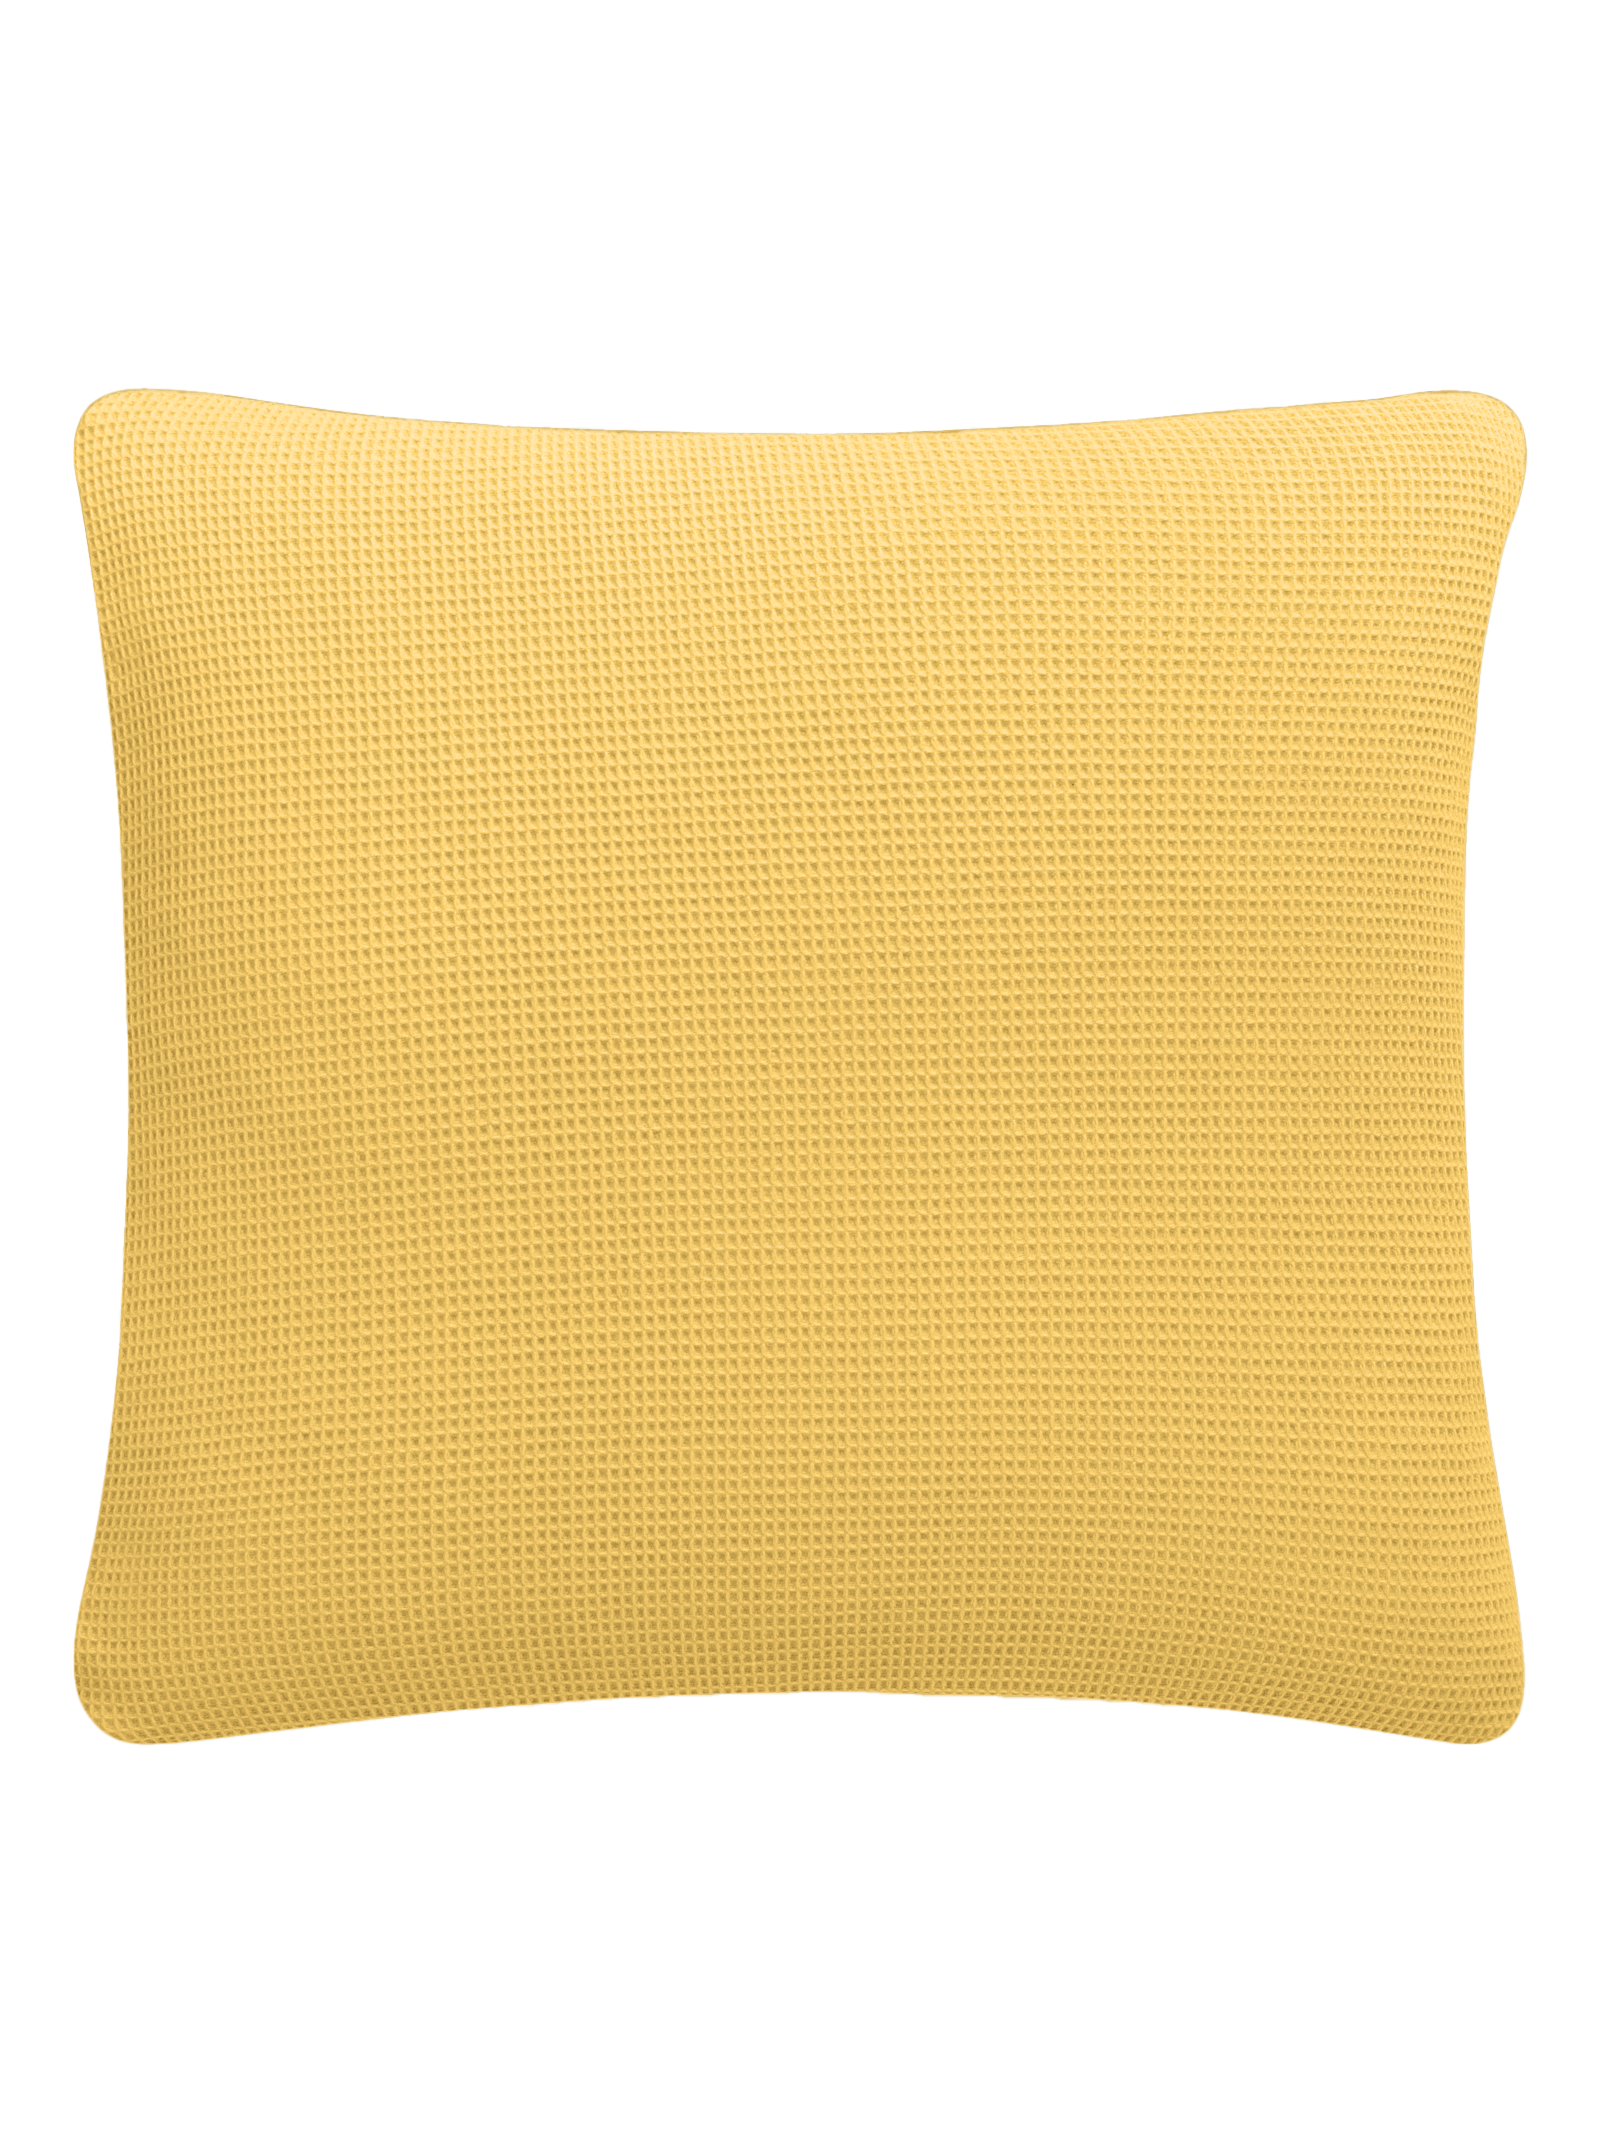 Piqué Cushion & Blanket Set / Sun